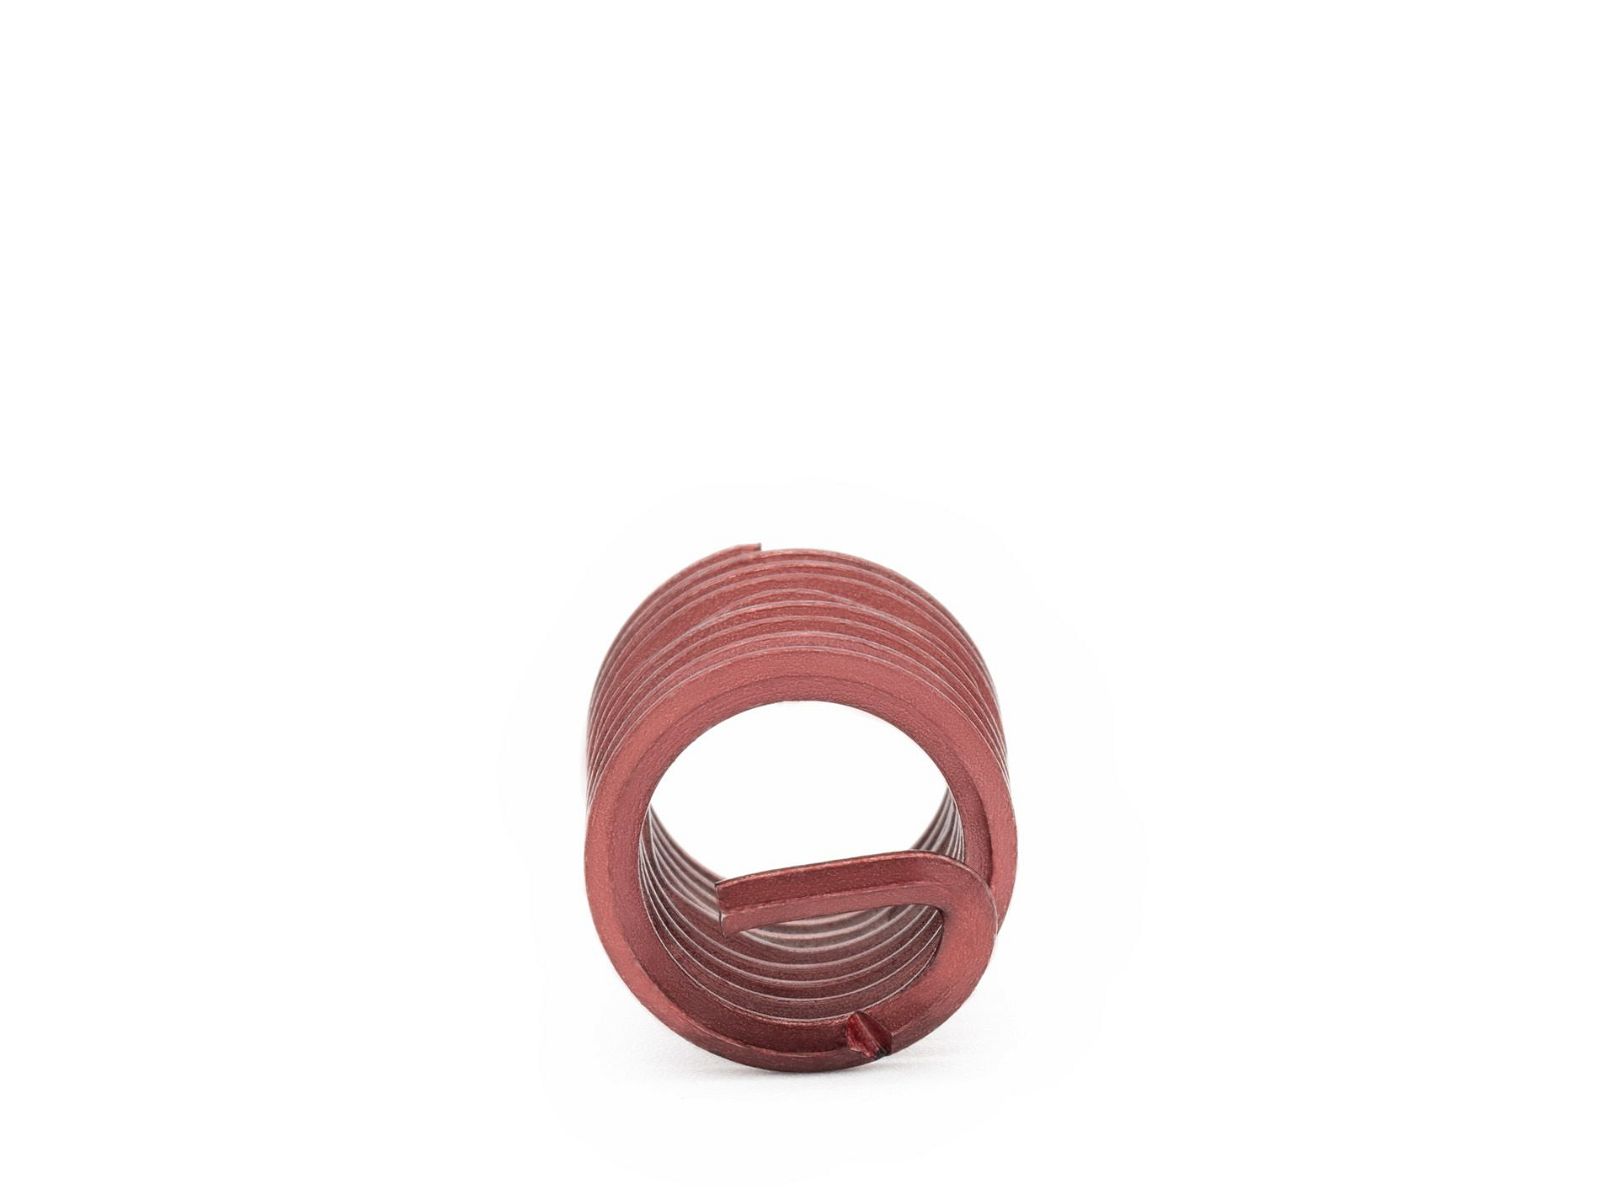 BaerCoil Wire Thread Inserts M 3 x 0.5 - 1.5 D (4.5 mm) - screw grip (screw locking) - 10 pcs.